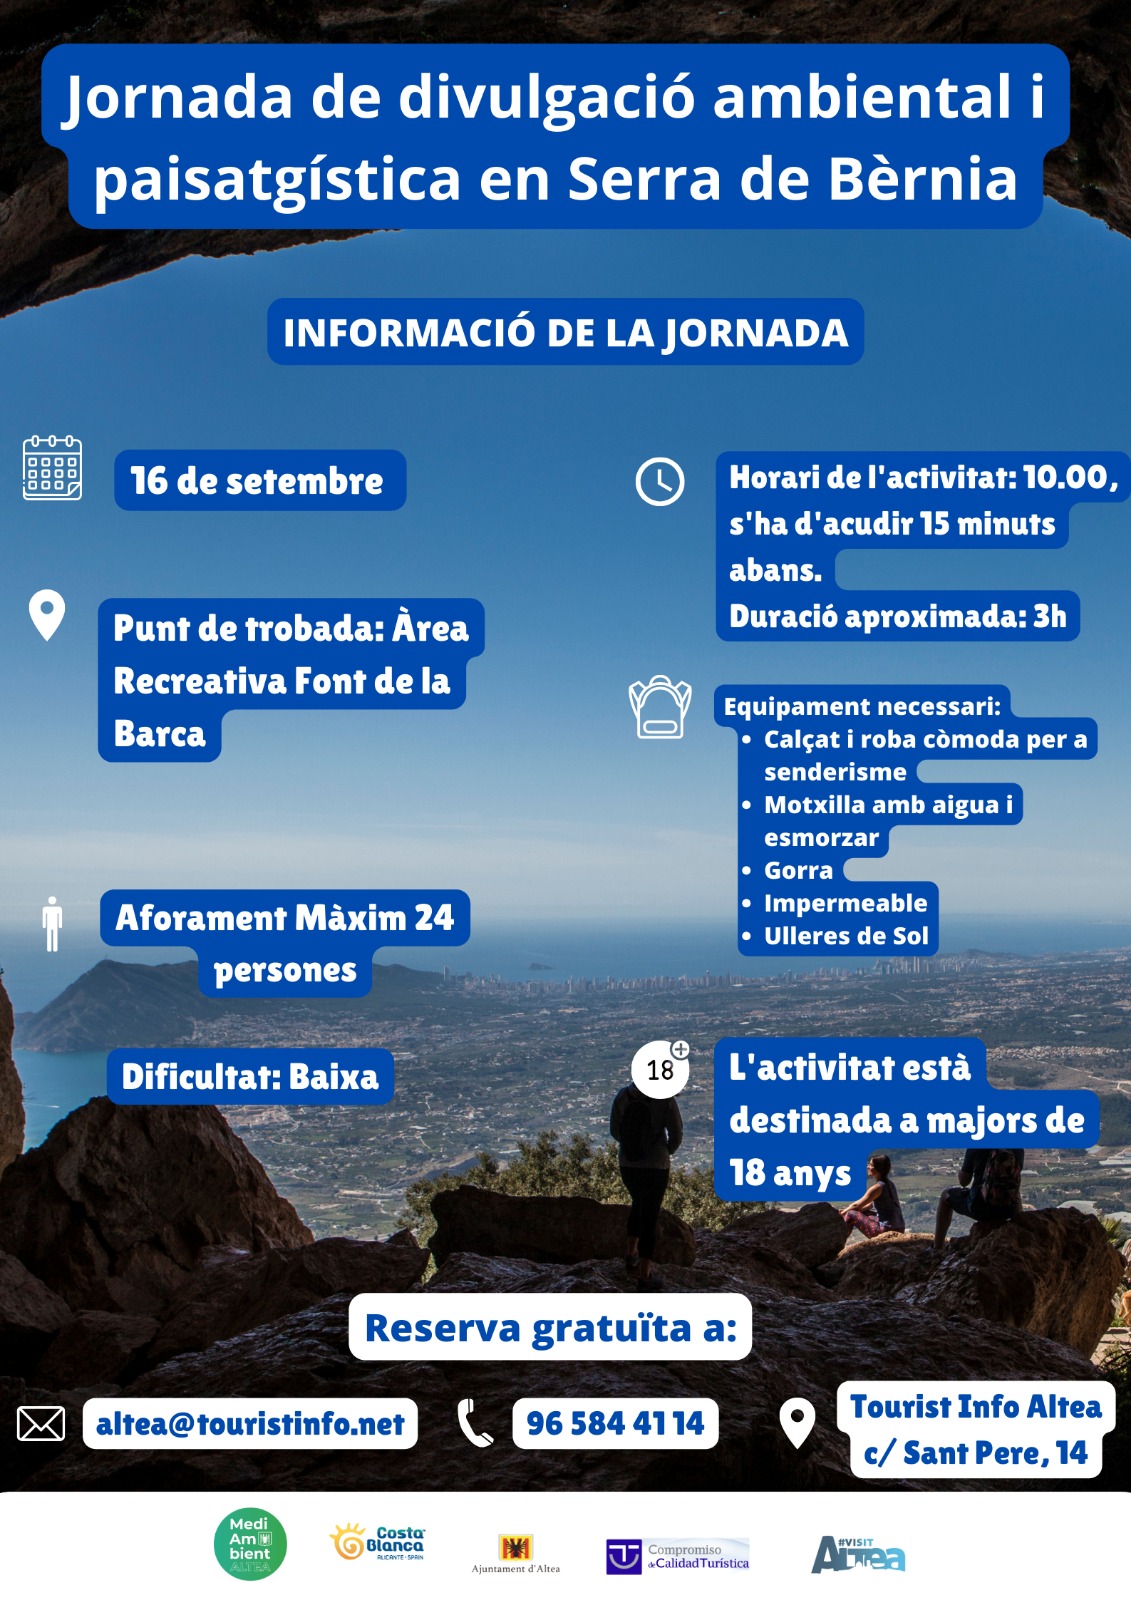 Turisme organitza una jornada de divulgació mediambiental i paisatgística en la serra de Bèrnia. Serà el dissabte, 16 de setembre, a les 10.00 hores. Reserva gratuïta en altea@touristinfo.net / 965844114. 